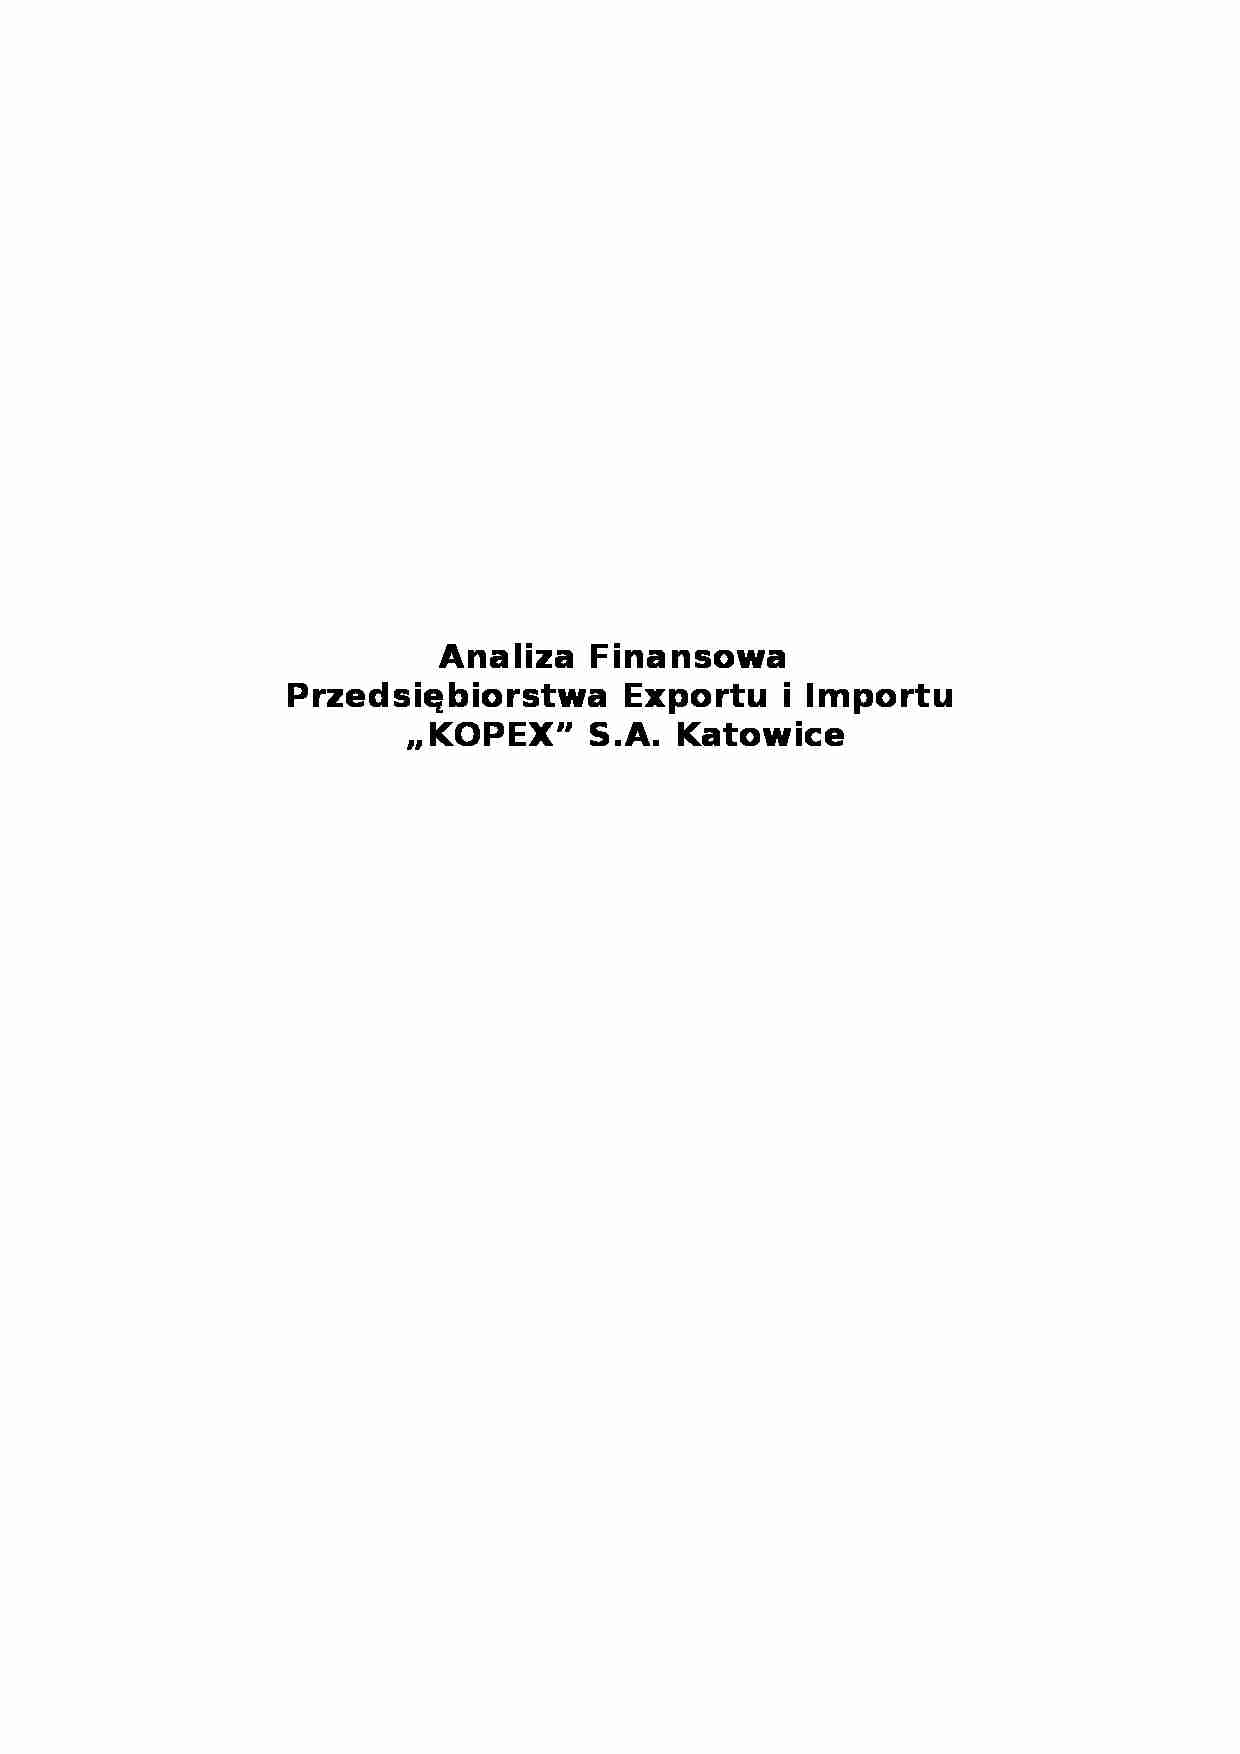 Analiza finansowa przedsiębiorstwa import - eksport „KOPEX” S.A. - strona 1